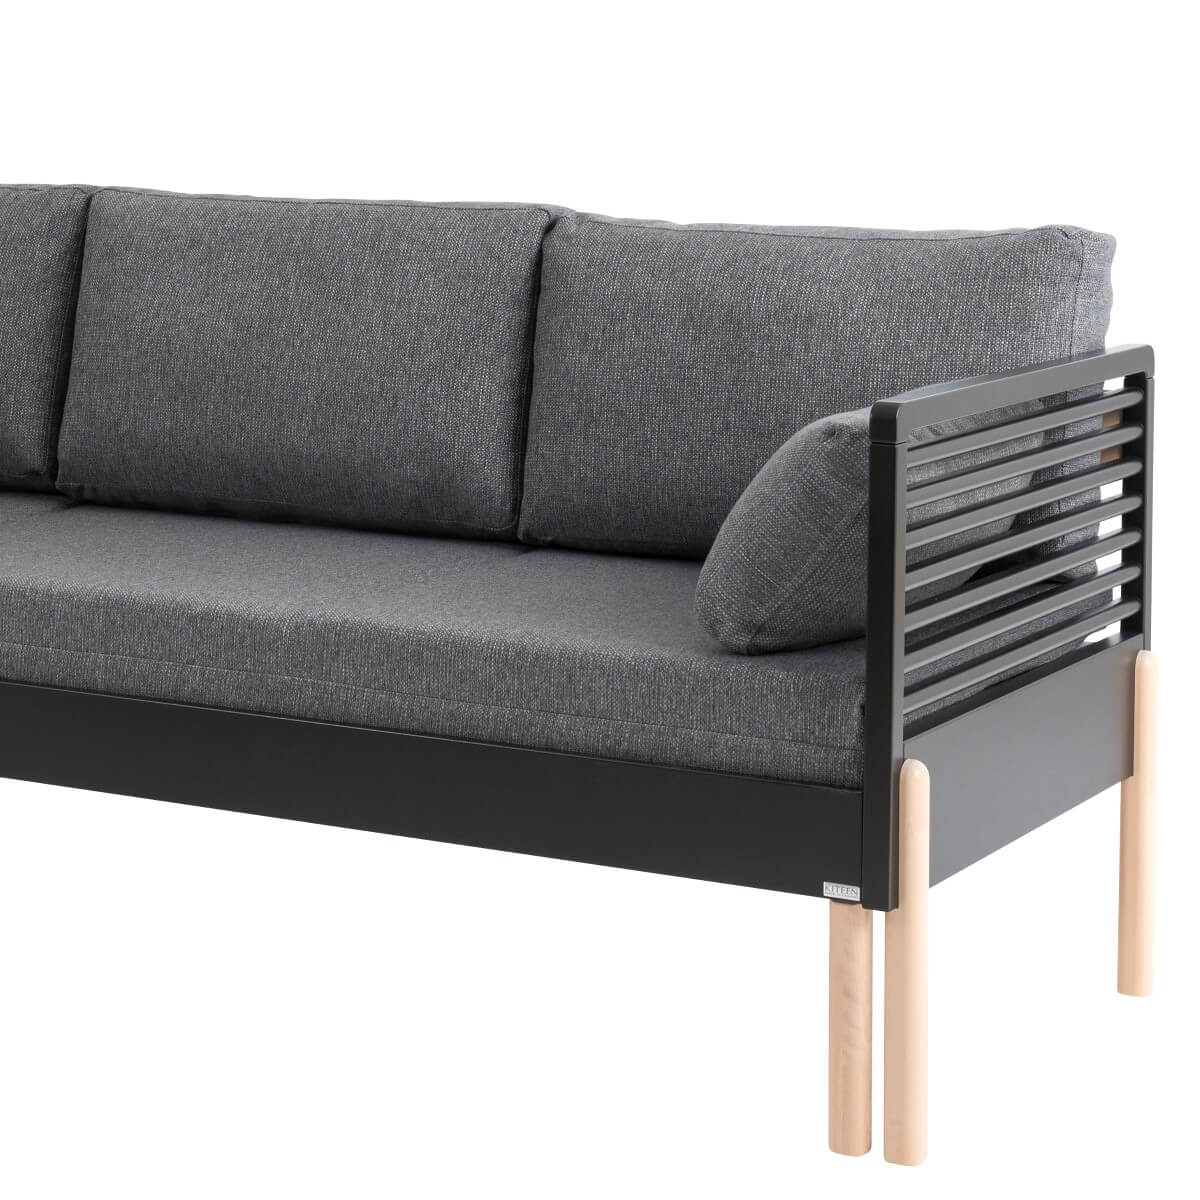 Sofa nowoczesna LENNU. Fragment rozkładanej sofy z szarym materacem z drewnianymi czarnymi bokami, na wysokich nóżkach w kolorze brzozy